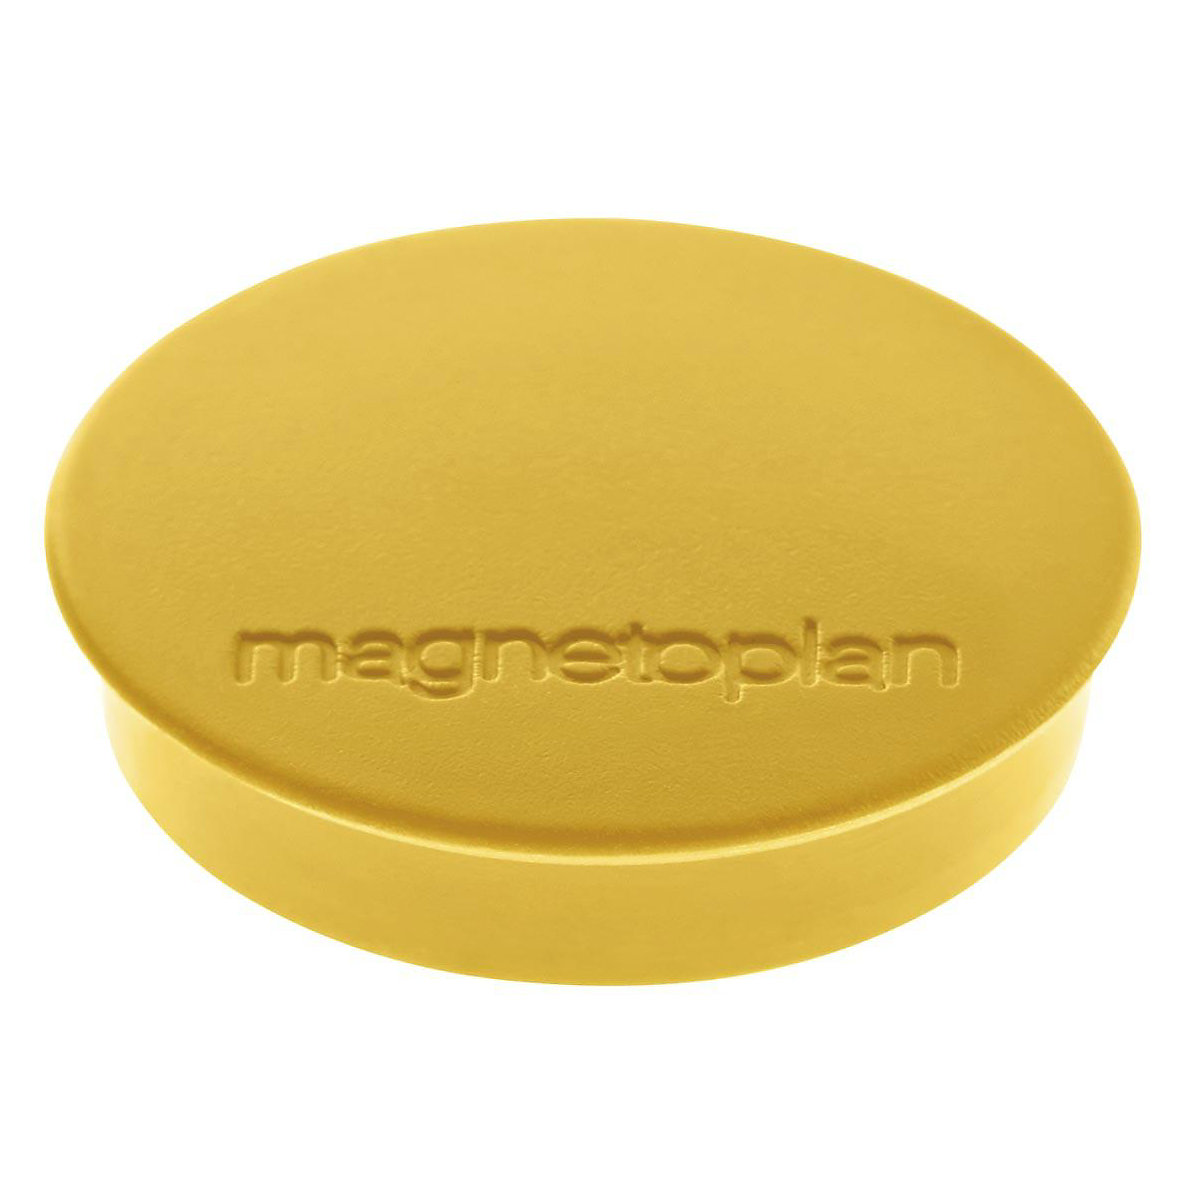 Magnet DISCOFIX STANDARD magnetoplan, Ø 30 mm, VE 80 Stk, gelb-8